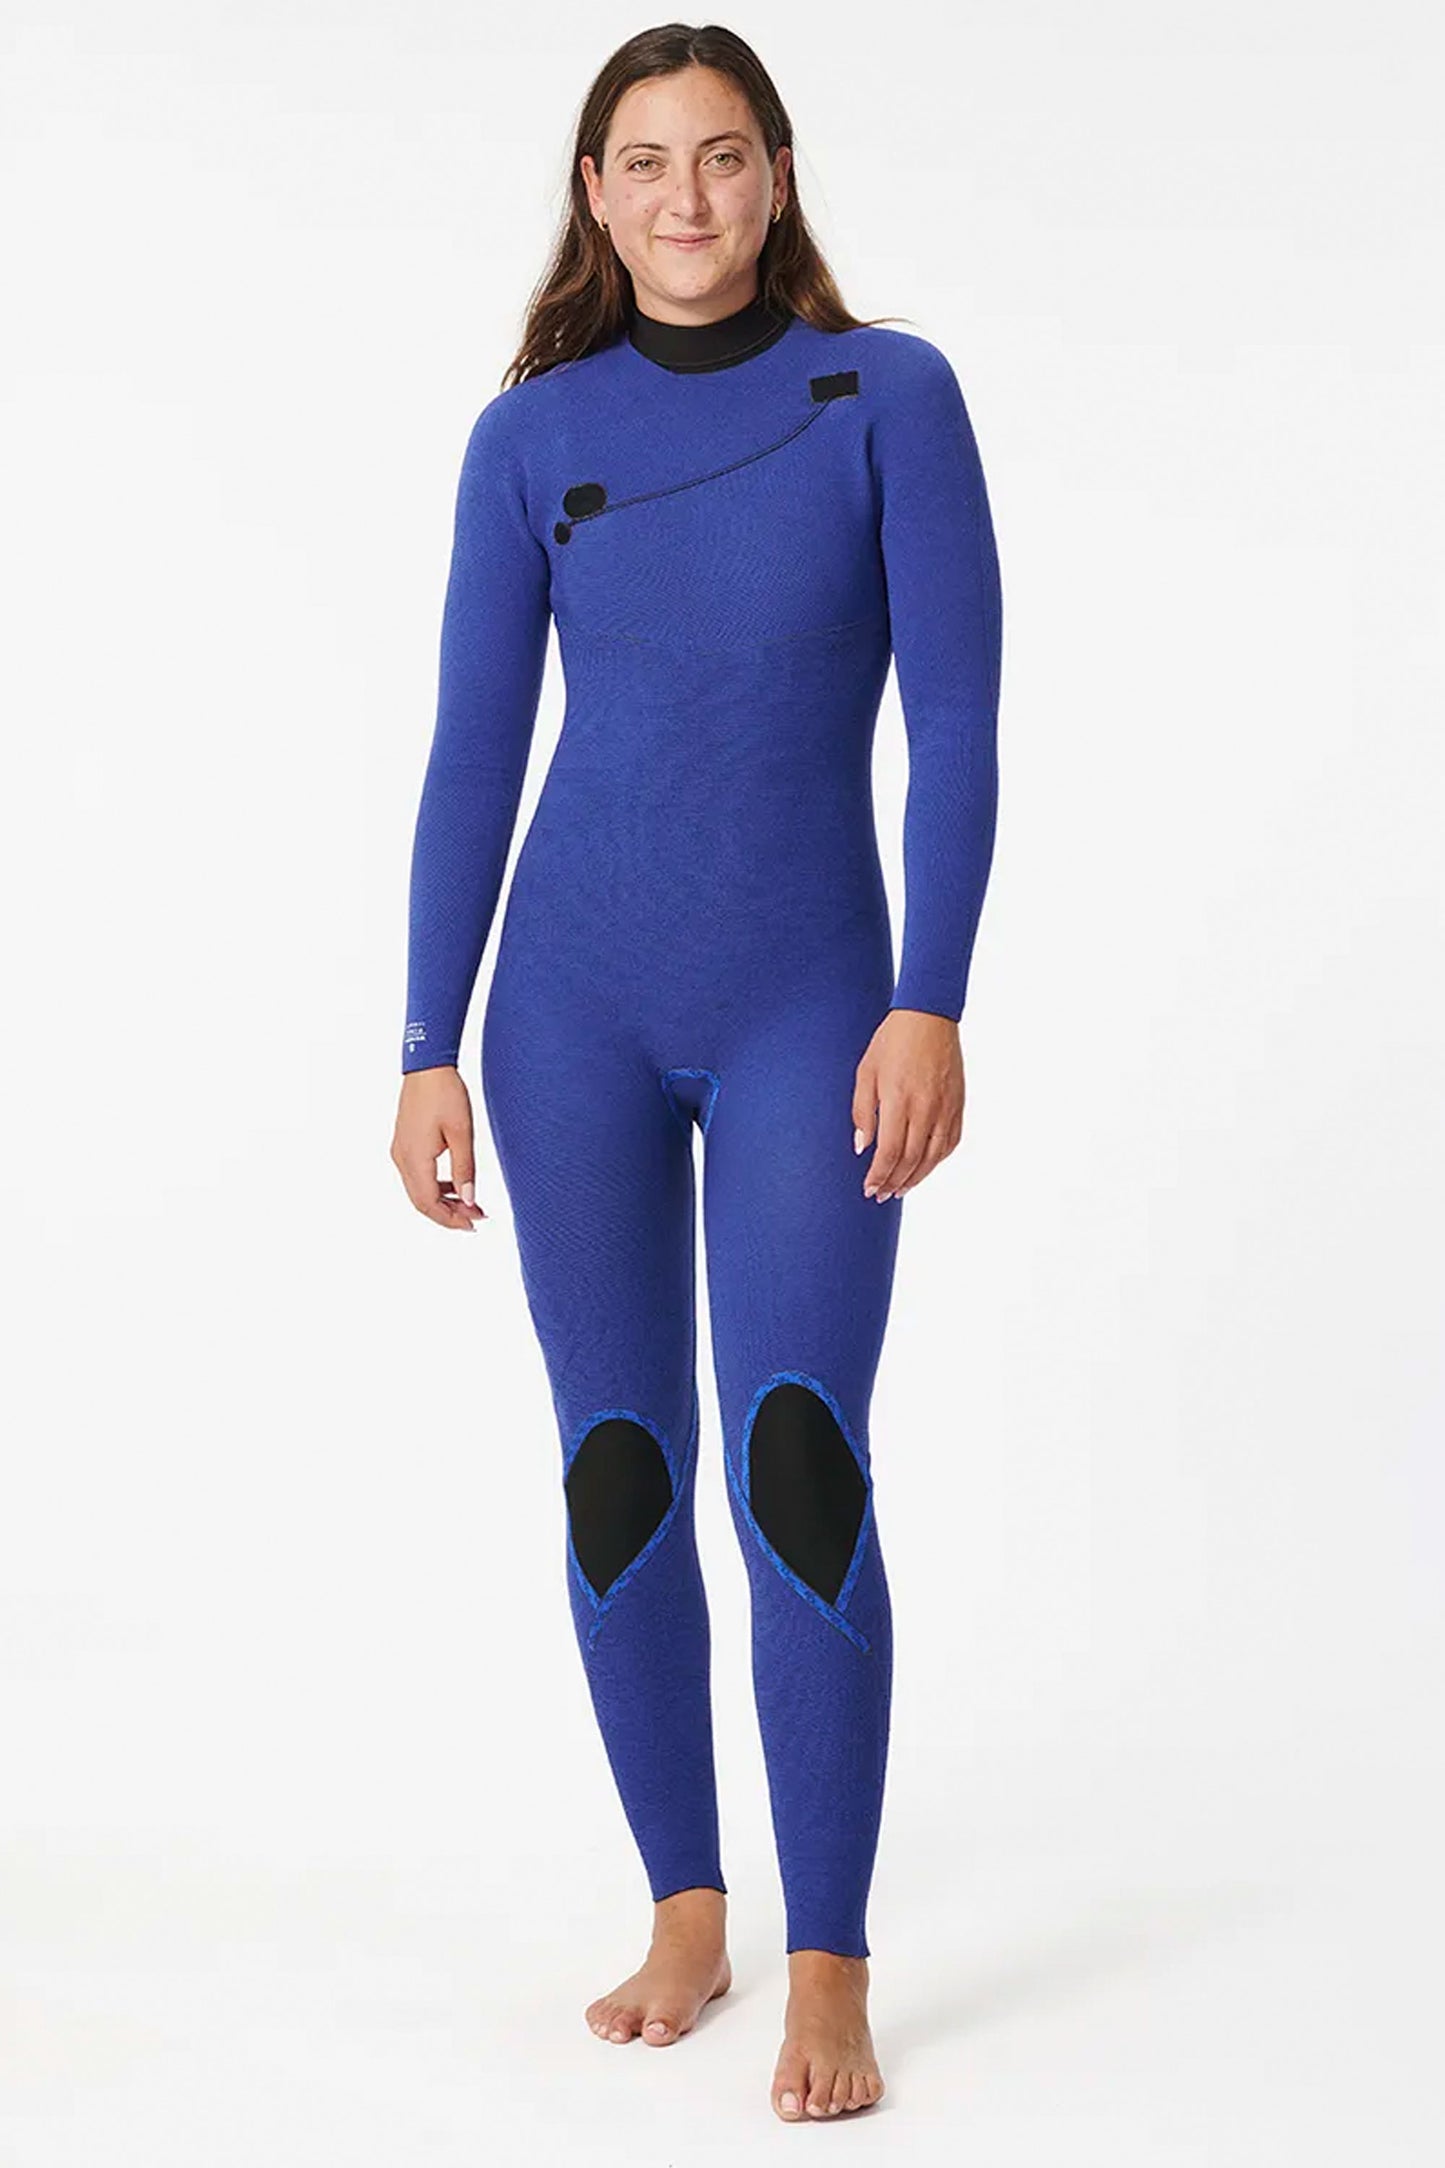 
                  
                    Pukas-Surf-Shop-rip-curl-wetsuit-E-bomb-5-3mm-zip-free-black
                  
                